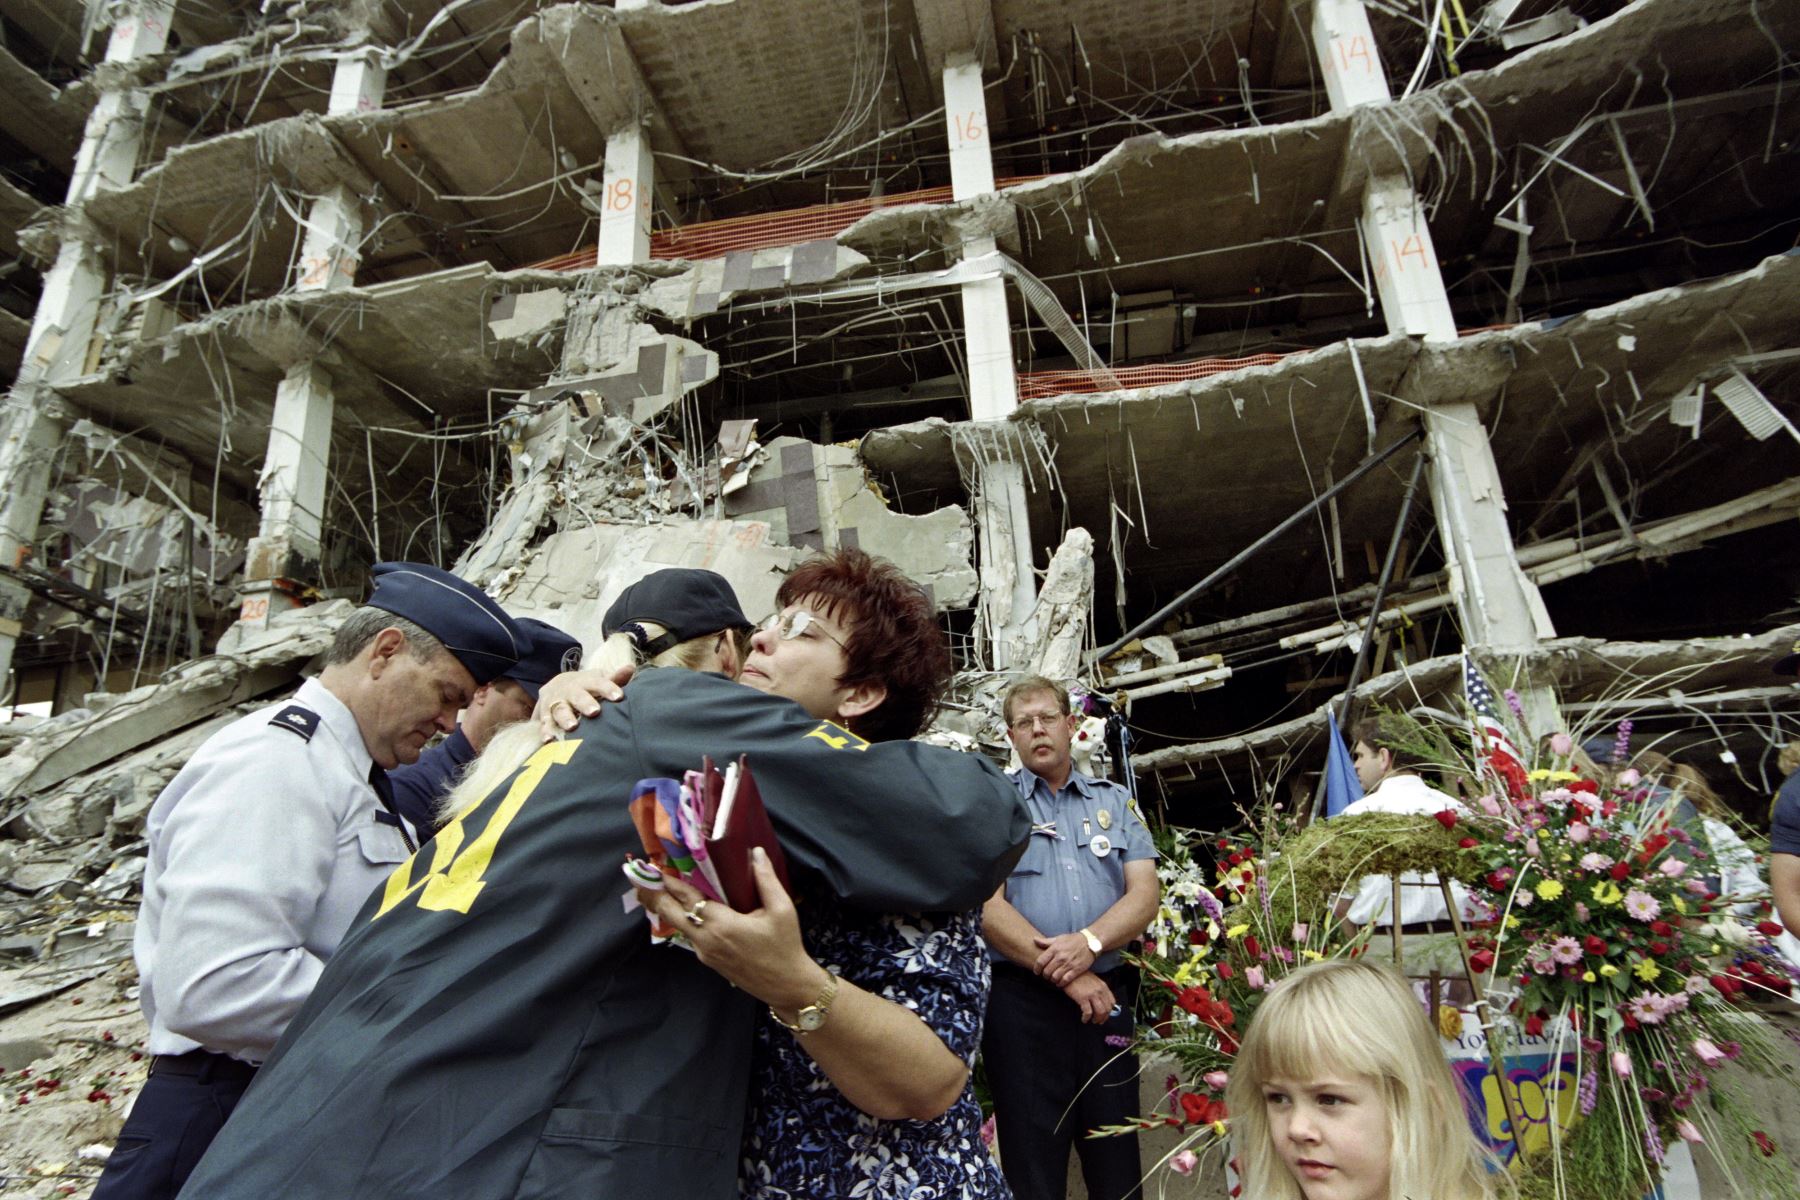 Se cumplen 25 años del segundo mayor ataque terrorista en Estados Unidos después del atentado del 11 de septiembre. En 1995 un camión con más de 2000 kilos de explosivos fue detonado frente al Edificio Federal Alfred Murrah en Oklahoma City, matando a 168 personas (entre ellos 19 niños menores de 6 años) y causando más 680 heridos.  Foto: AFP